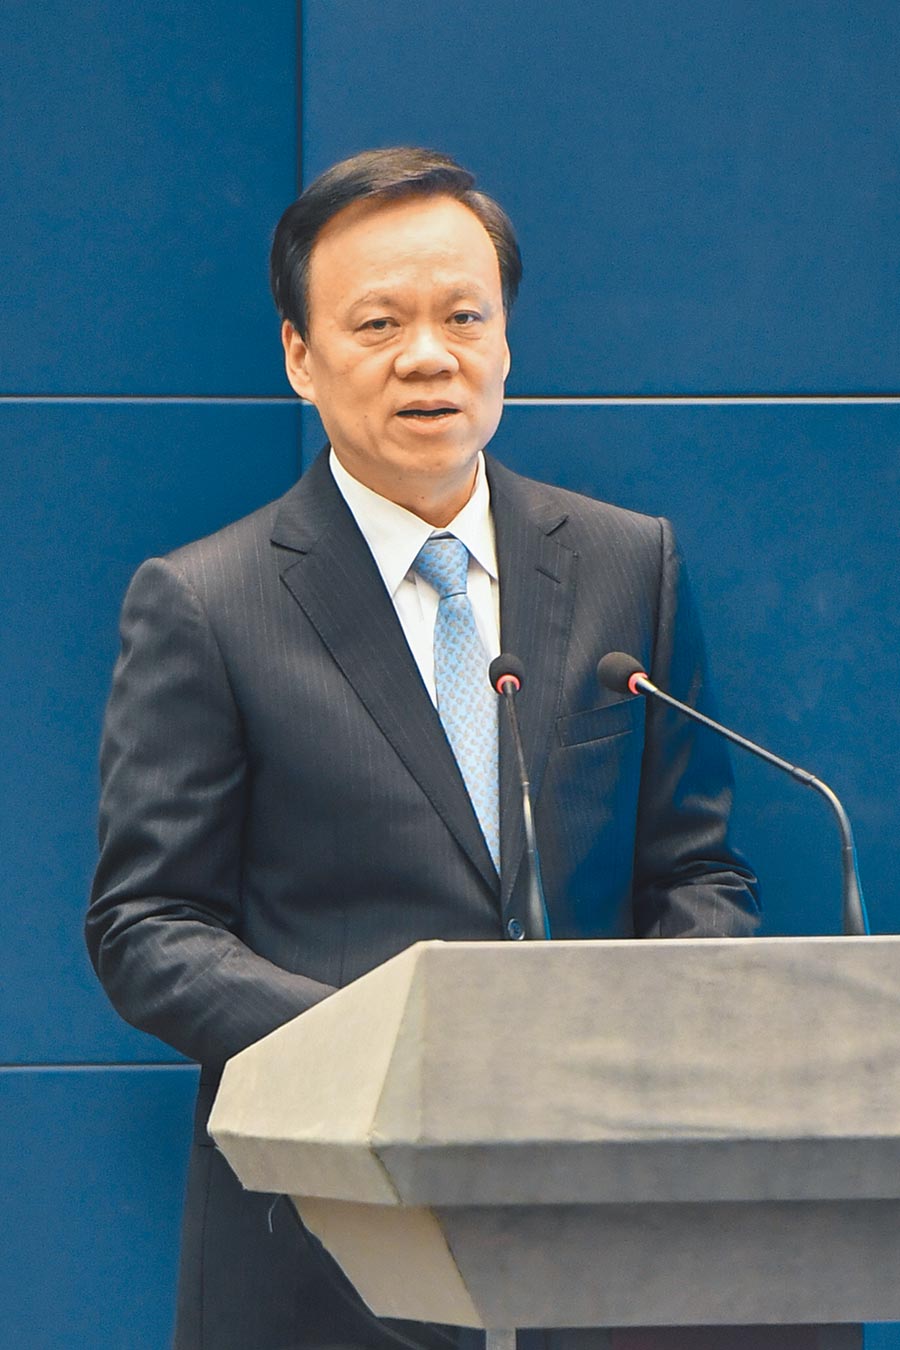 重庆市委书记陈敏尔，在中共党政要员中具年龄与经历优势。（中新社）